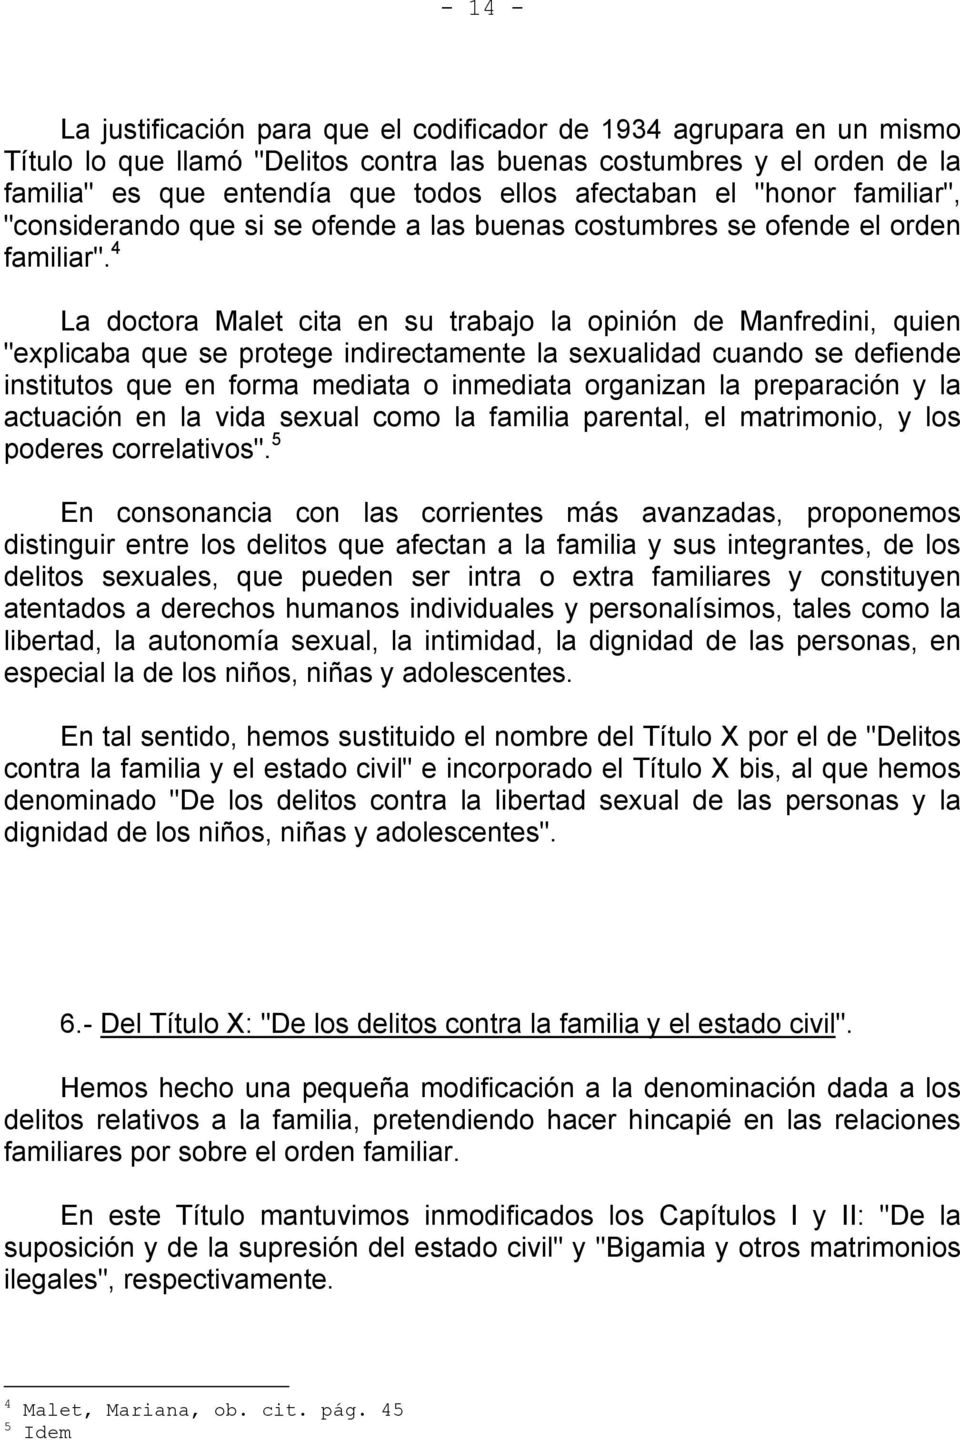 4 La doctora Malet cita en su trabajo la opinión de Manfredini, quien "explicaba que se protege indirectamente la sexualidad cuando se defiende institutos que en forma mediata o inmediata organizan